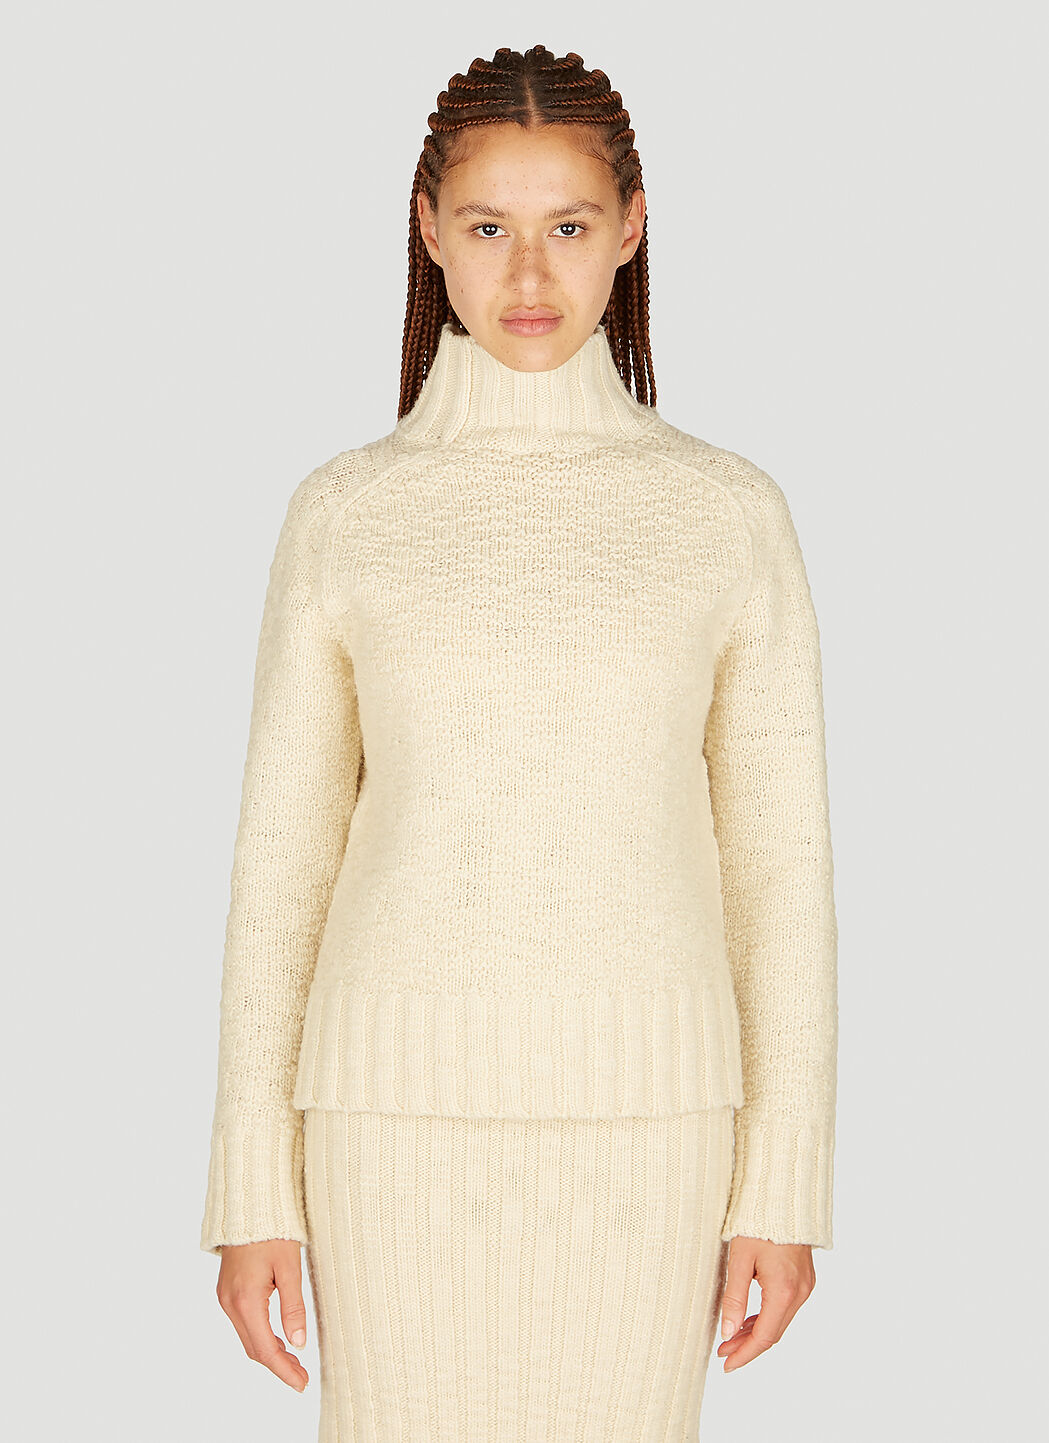 GANNI High neck Textured Knit Sweater Beige gan0254037